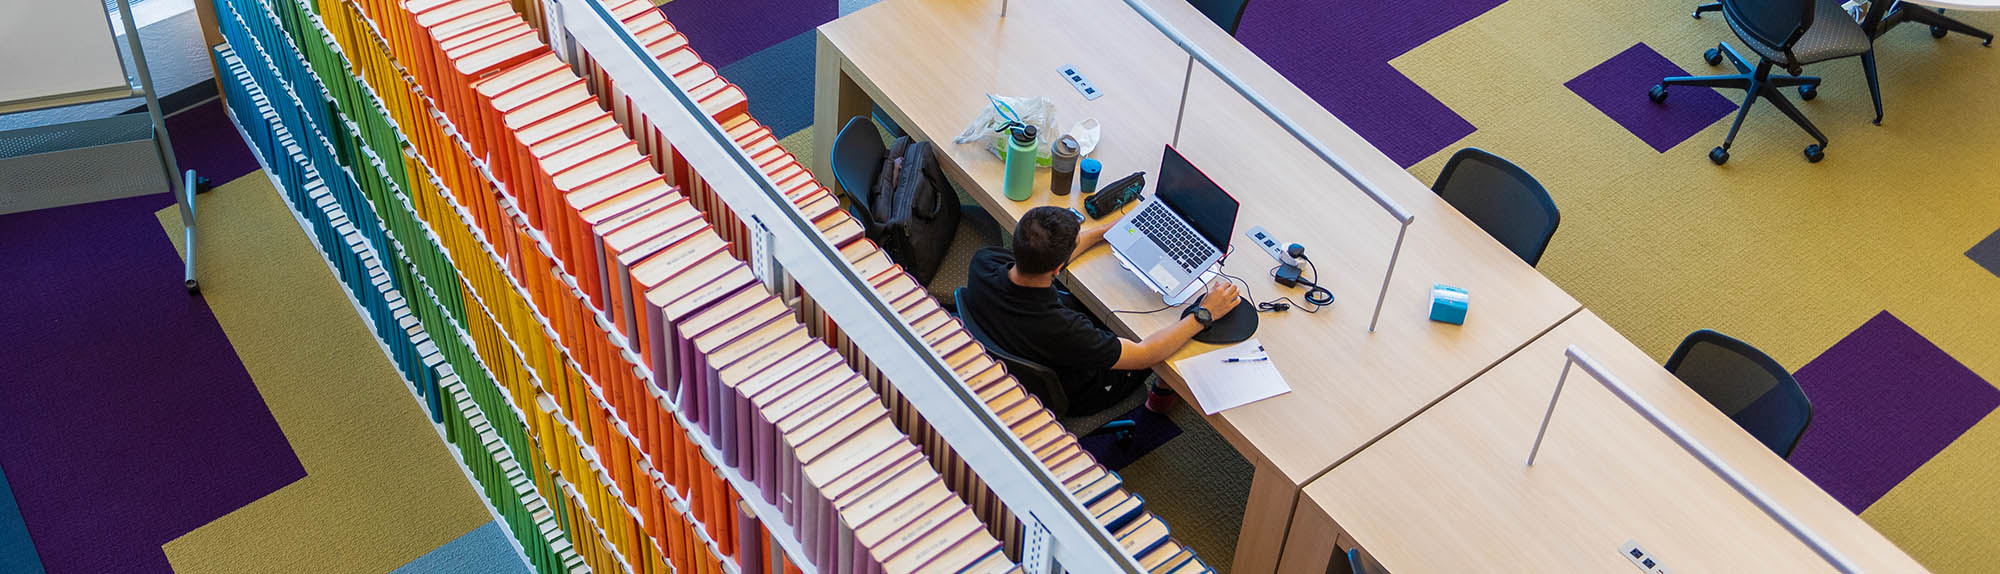 色とりどりの本を背景に、HSC 図書館で勉強している人の鳥瞰図